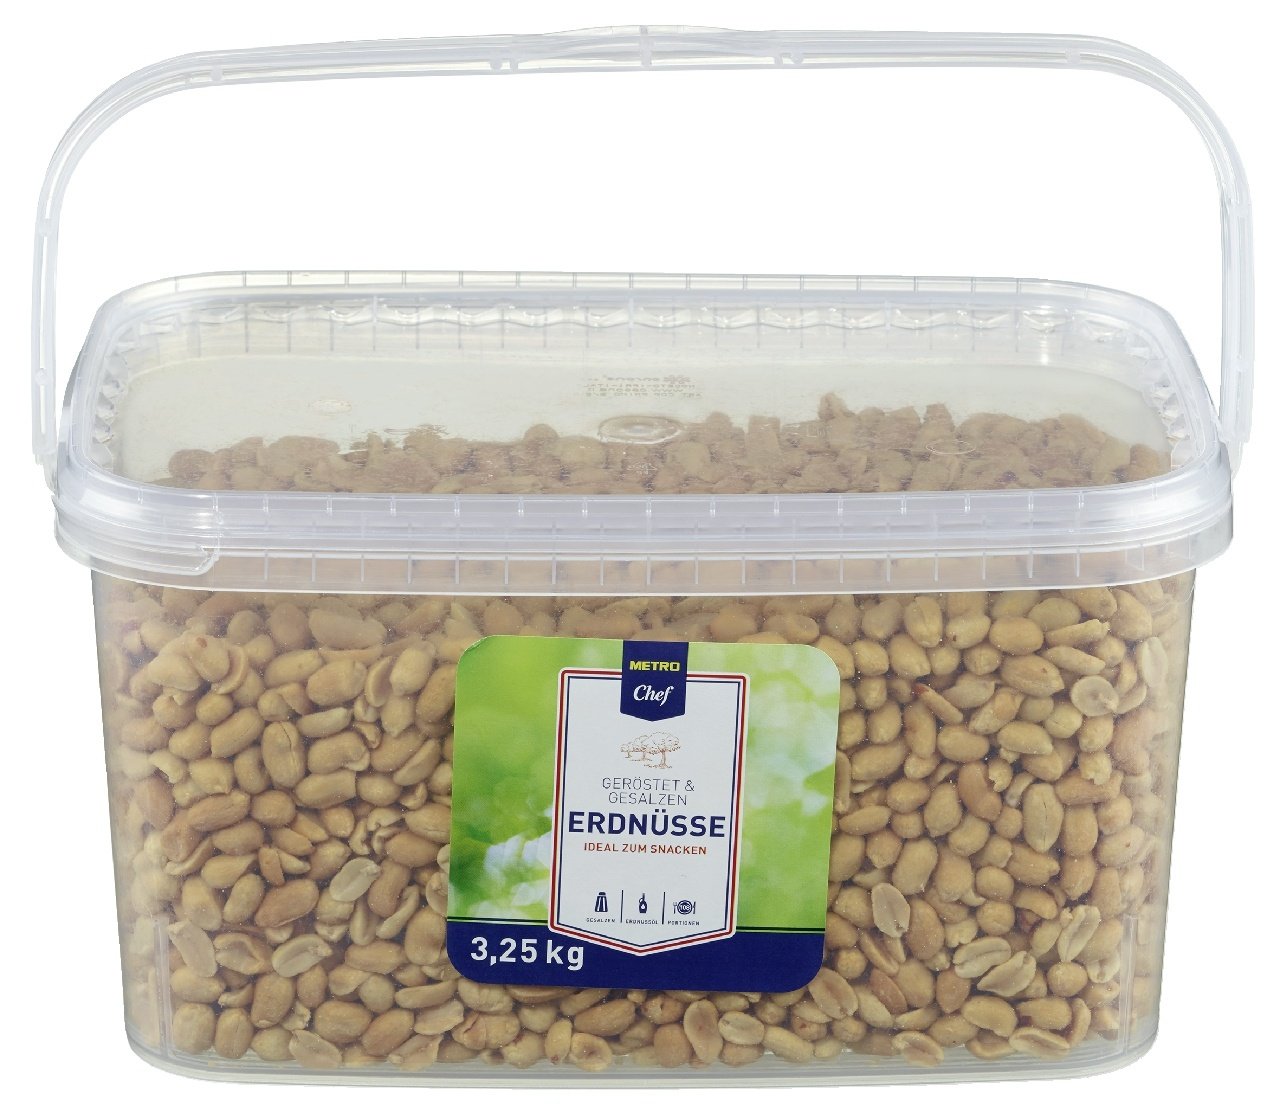 Metro Chef Nüsse Erdnüsse Geröstet & Gesalzen (3.25 kg)